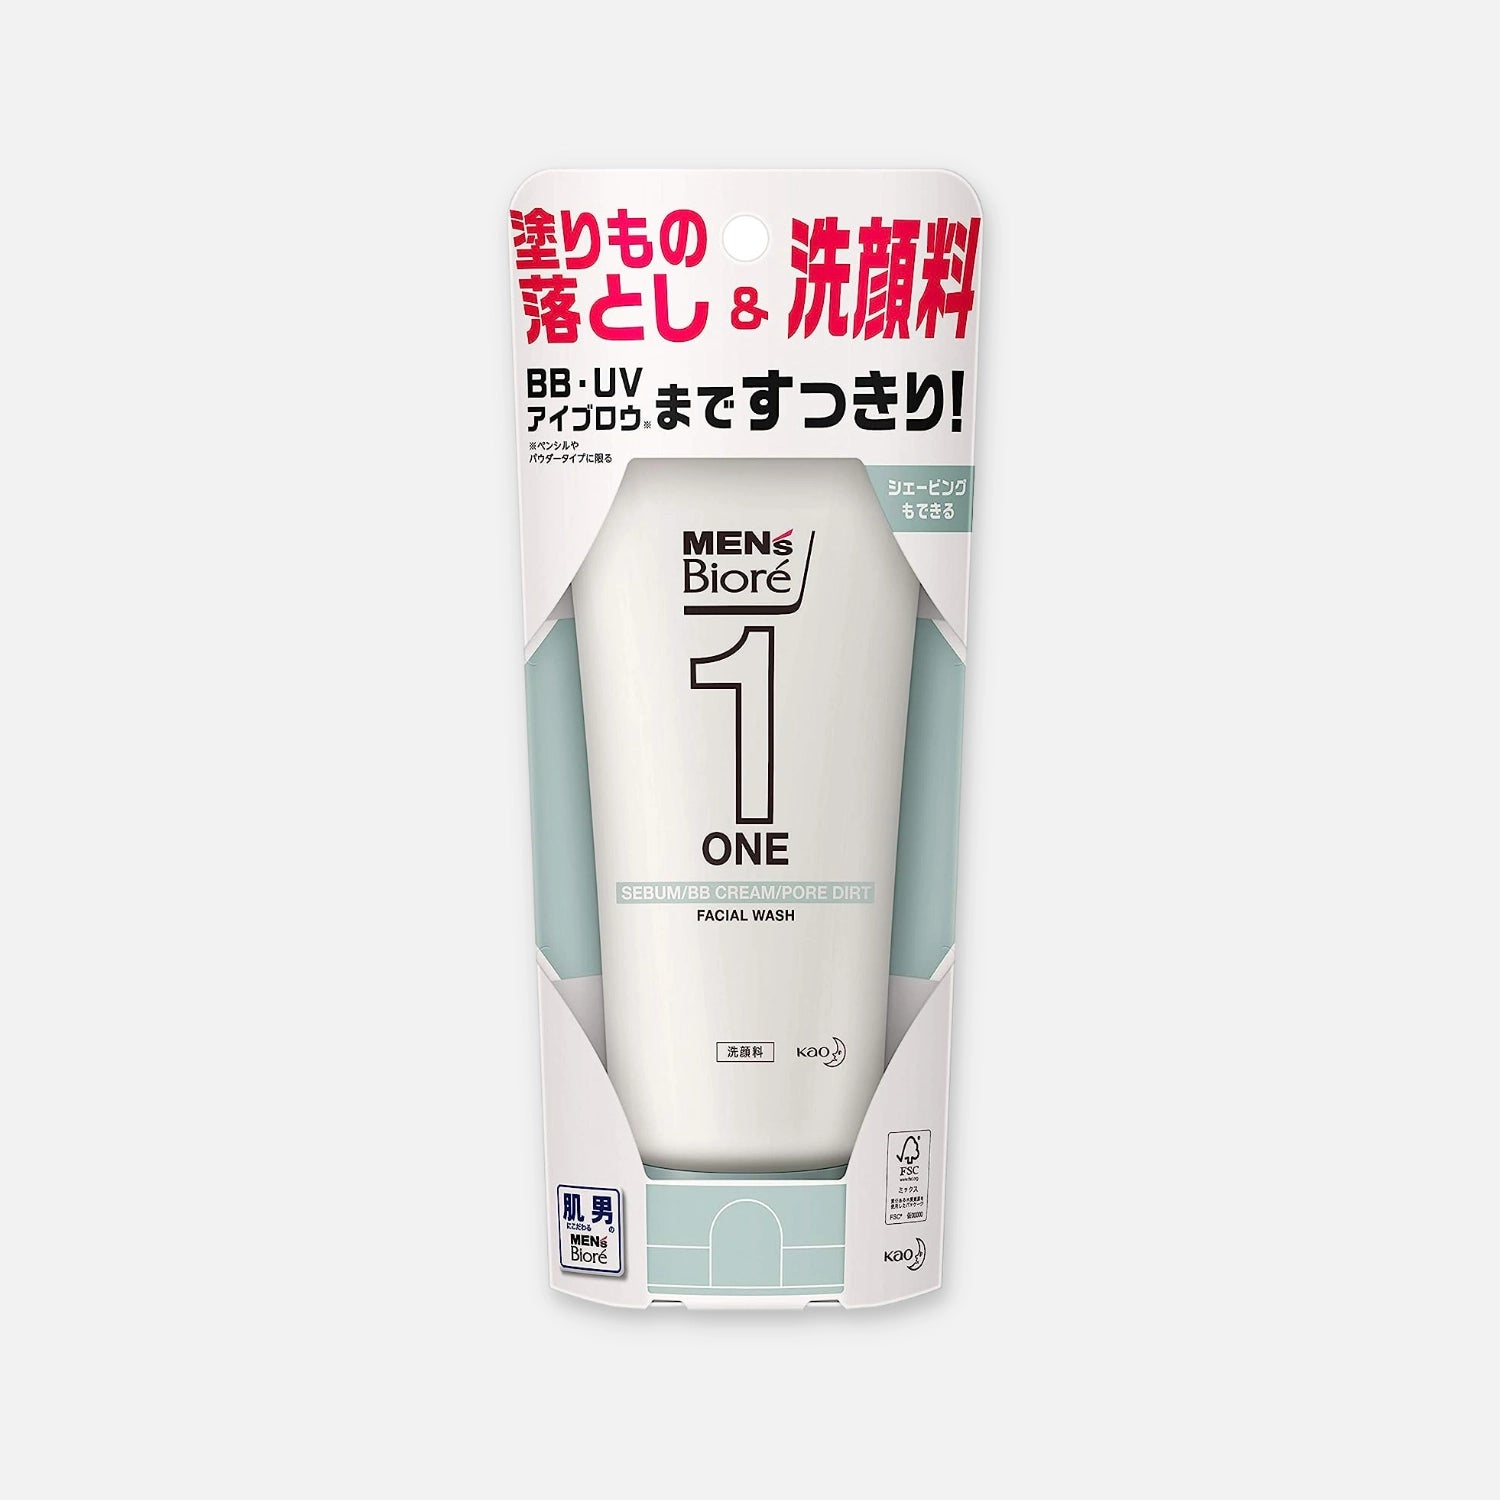 Biore Men's One Facial Cleansing Gel 200g – Buy Me Japan